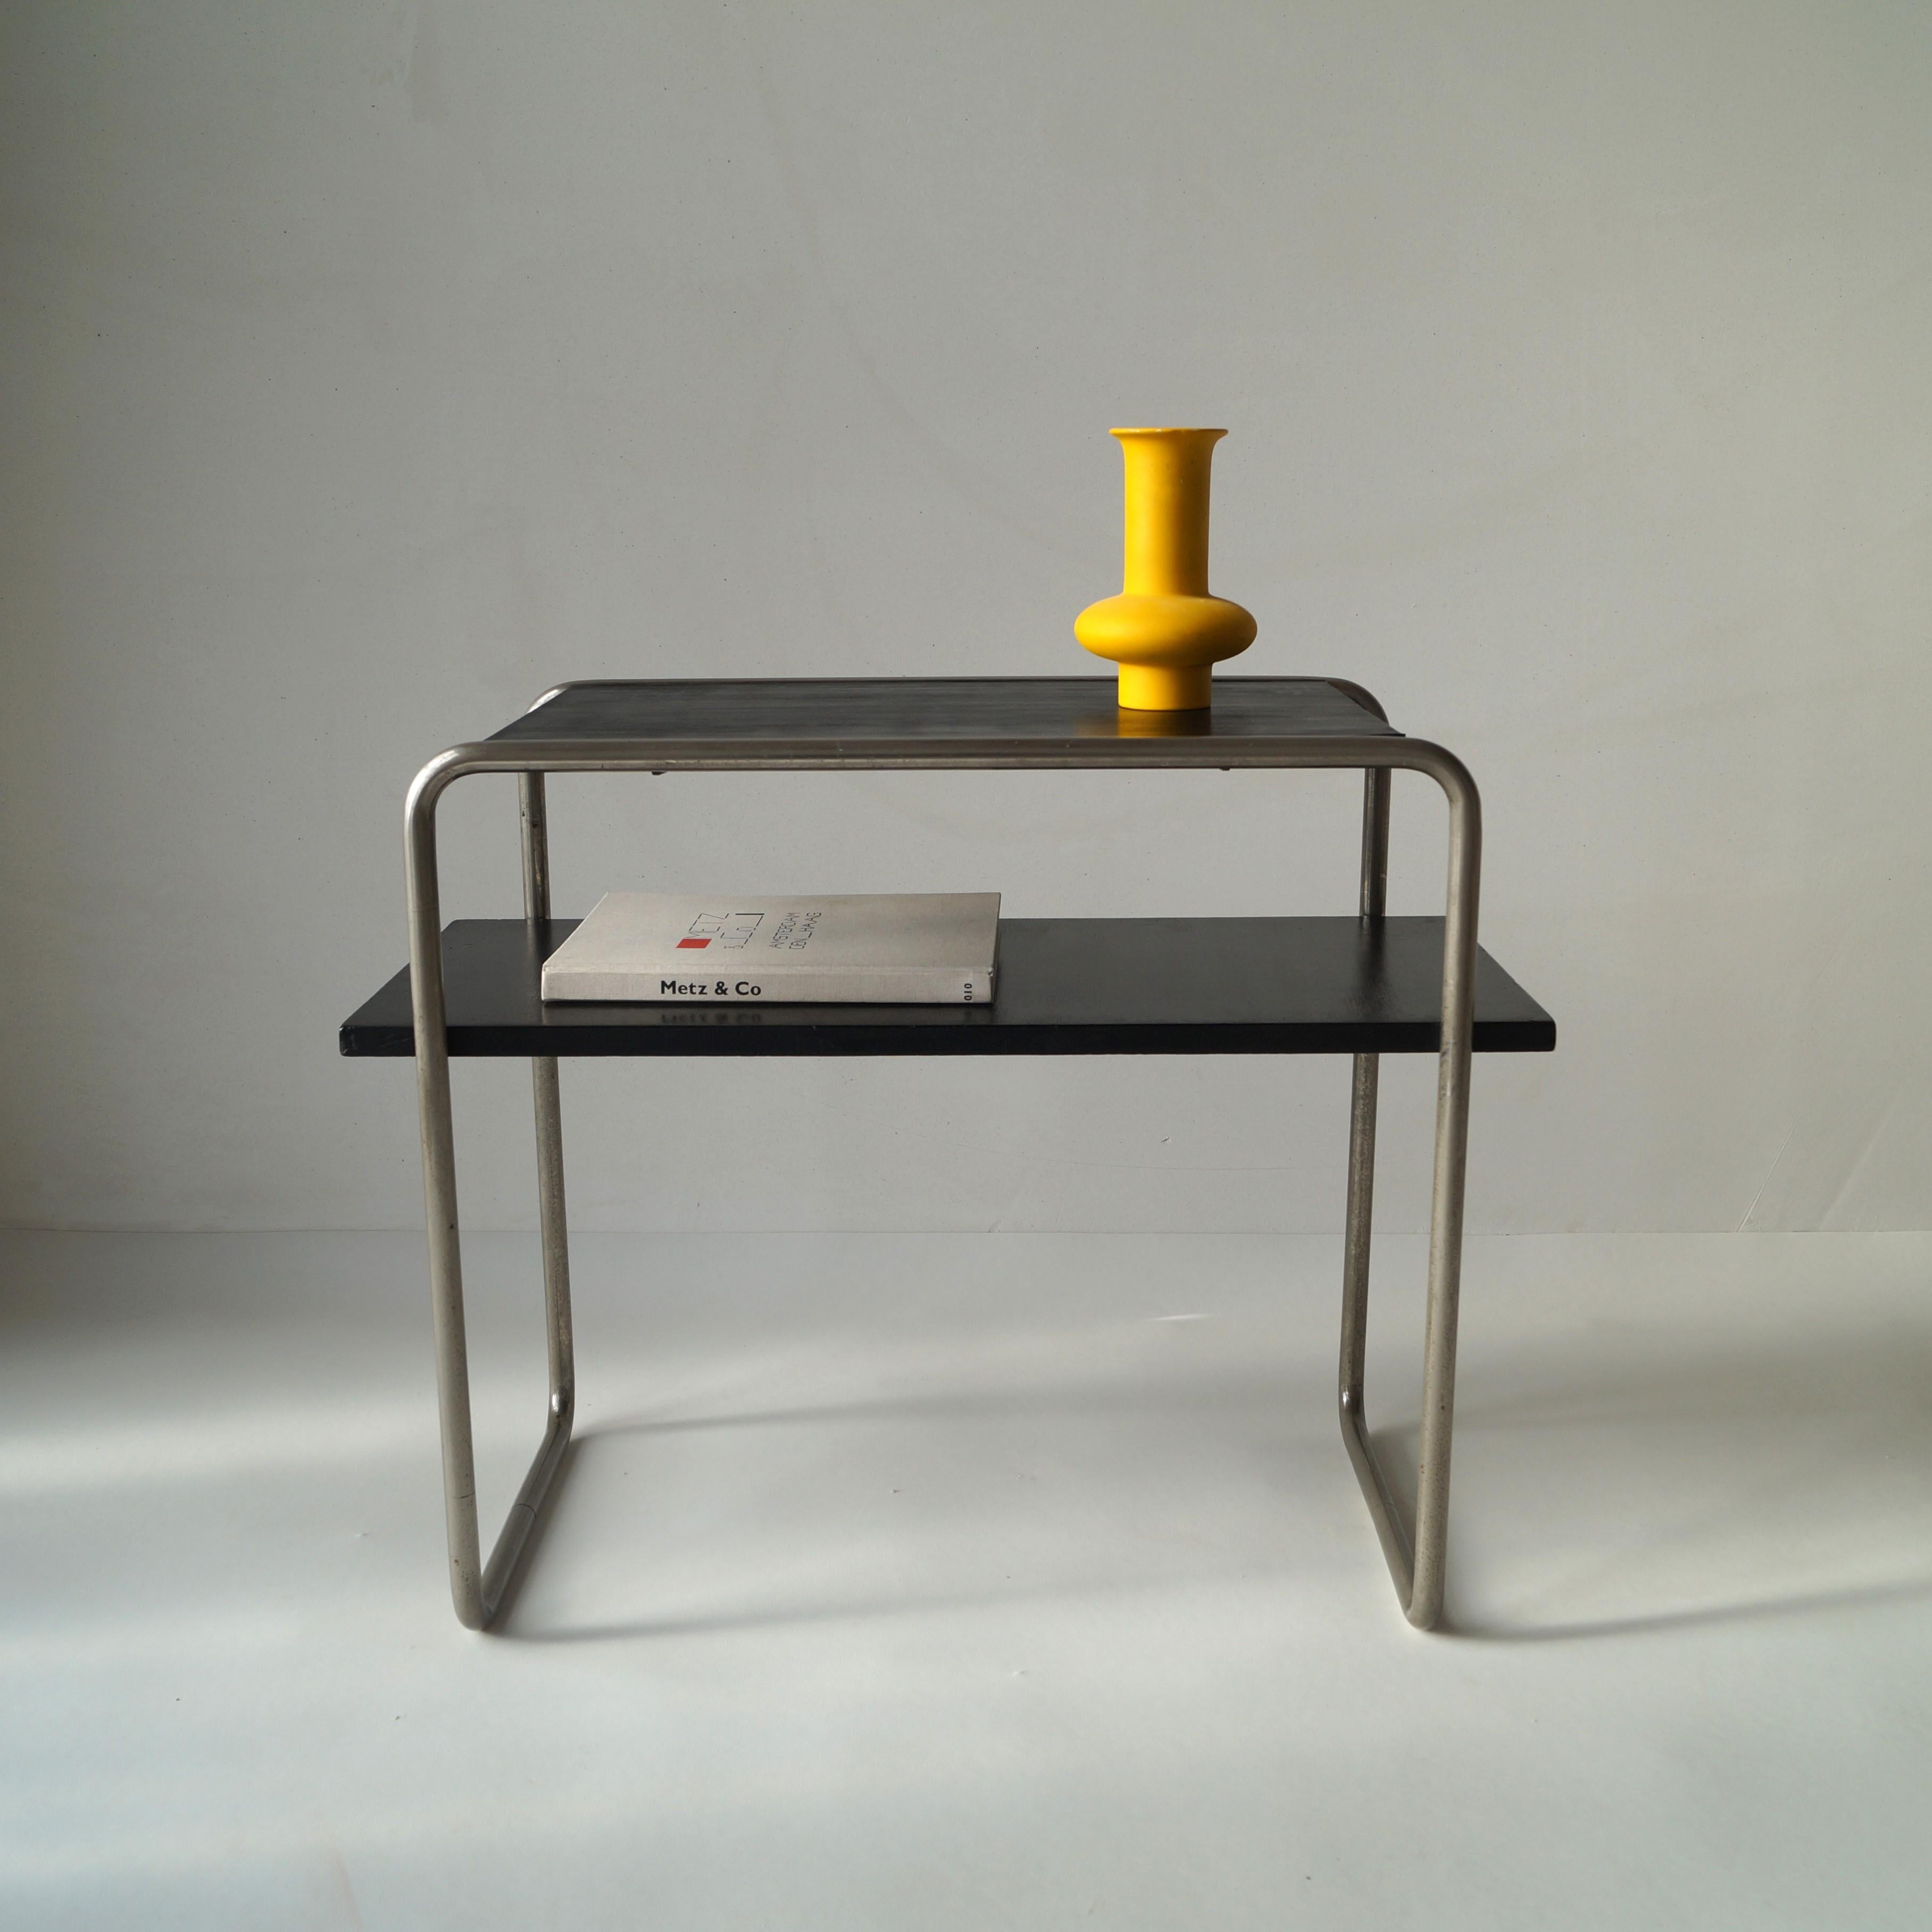 Rare et emblématique console ou table d'appoint B12 des années 1930, en acier tubulaire et en bois, conçue par Marcel Breuer en 1928. Ce modèle n'est plus en production. La particularité du B12 est que la tablette inférieure est plus longue que la